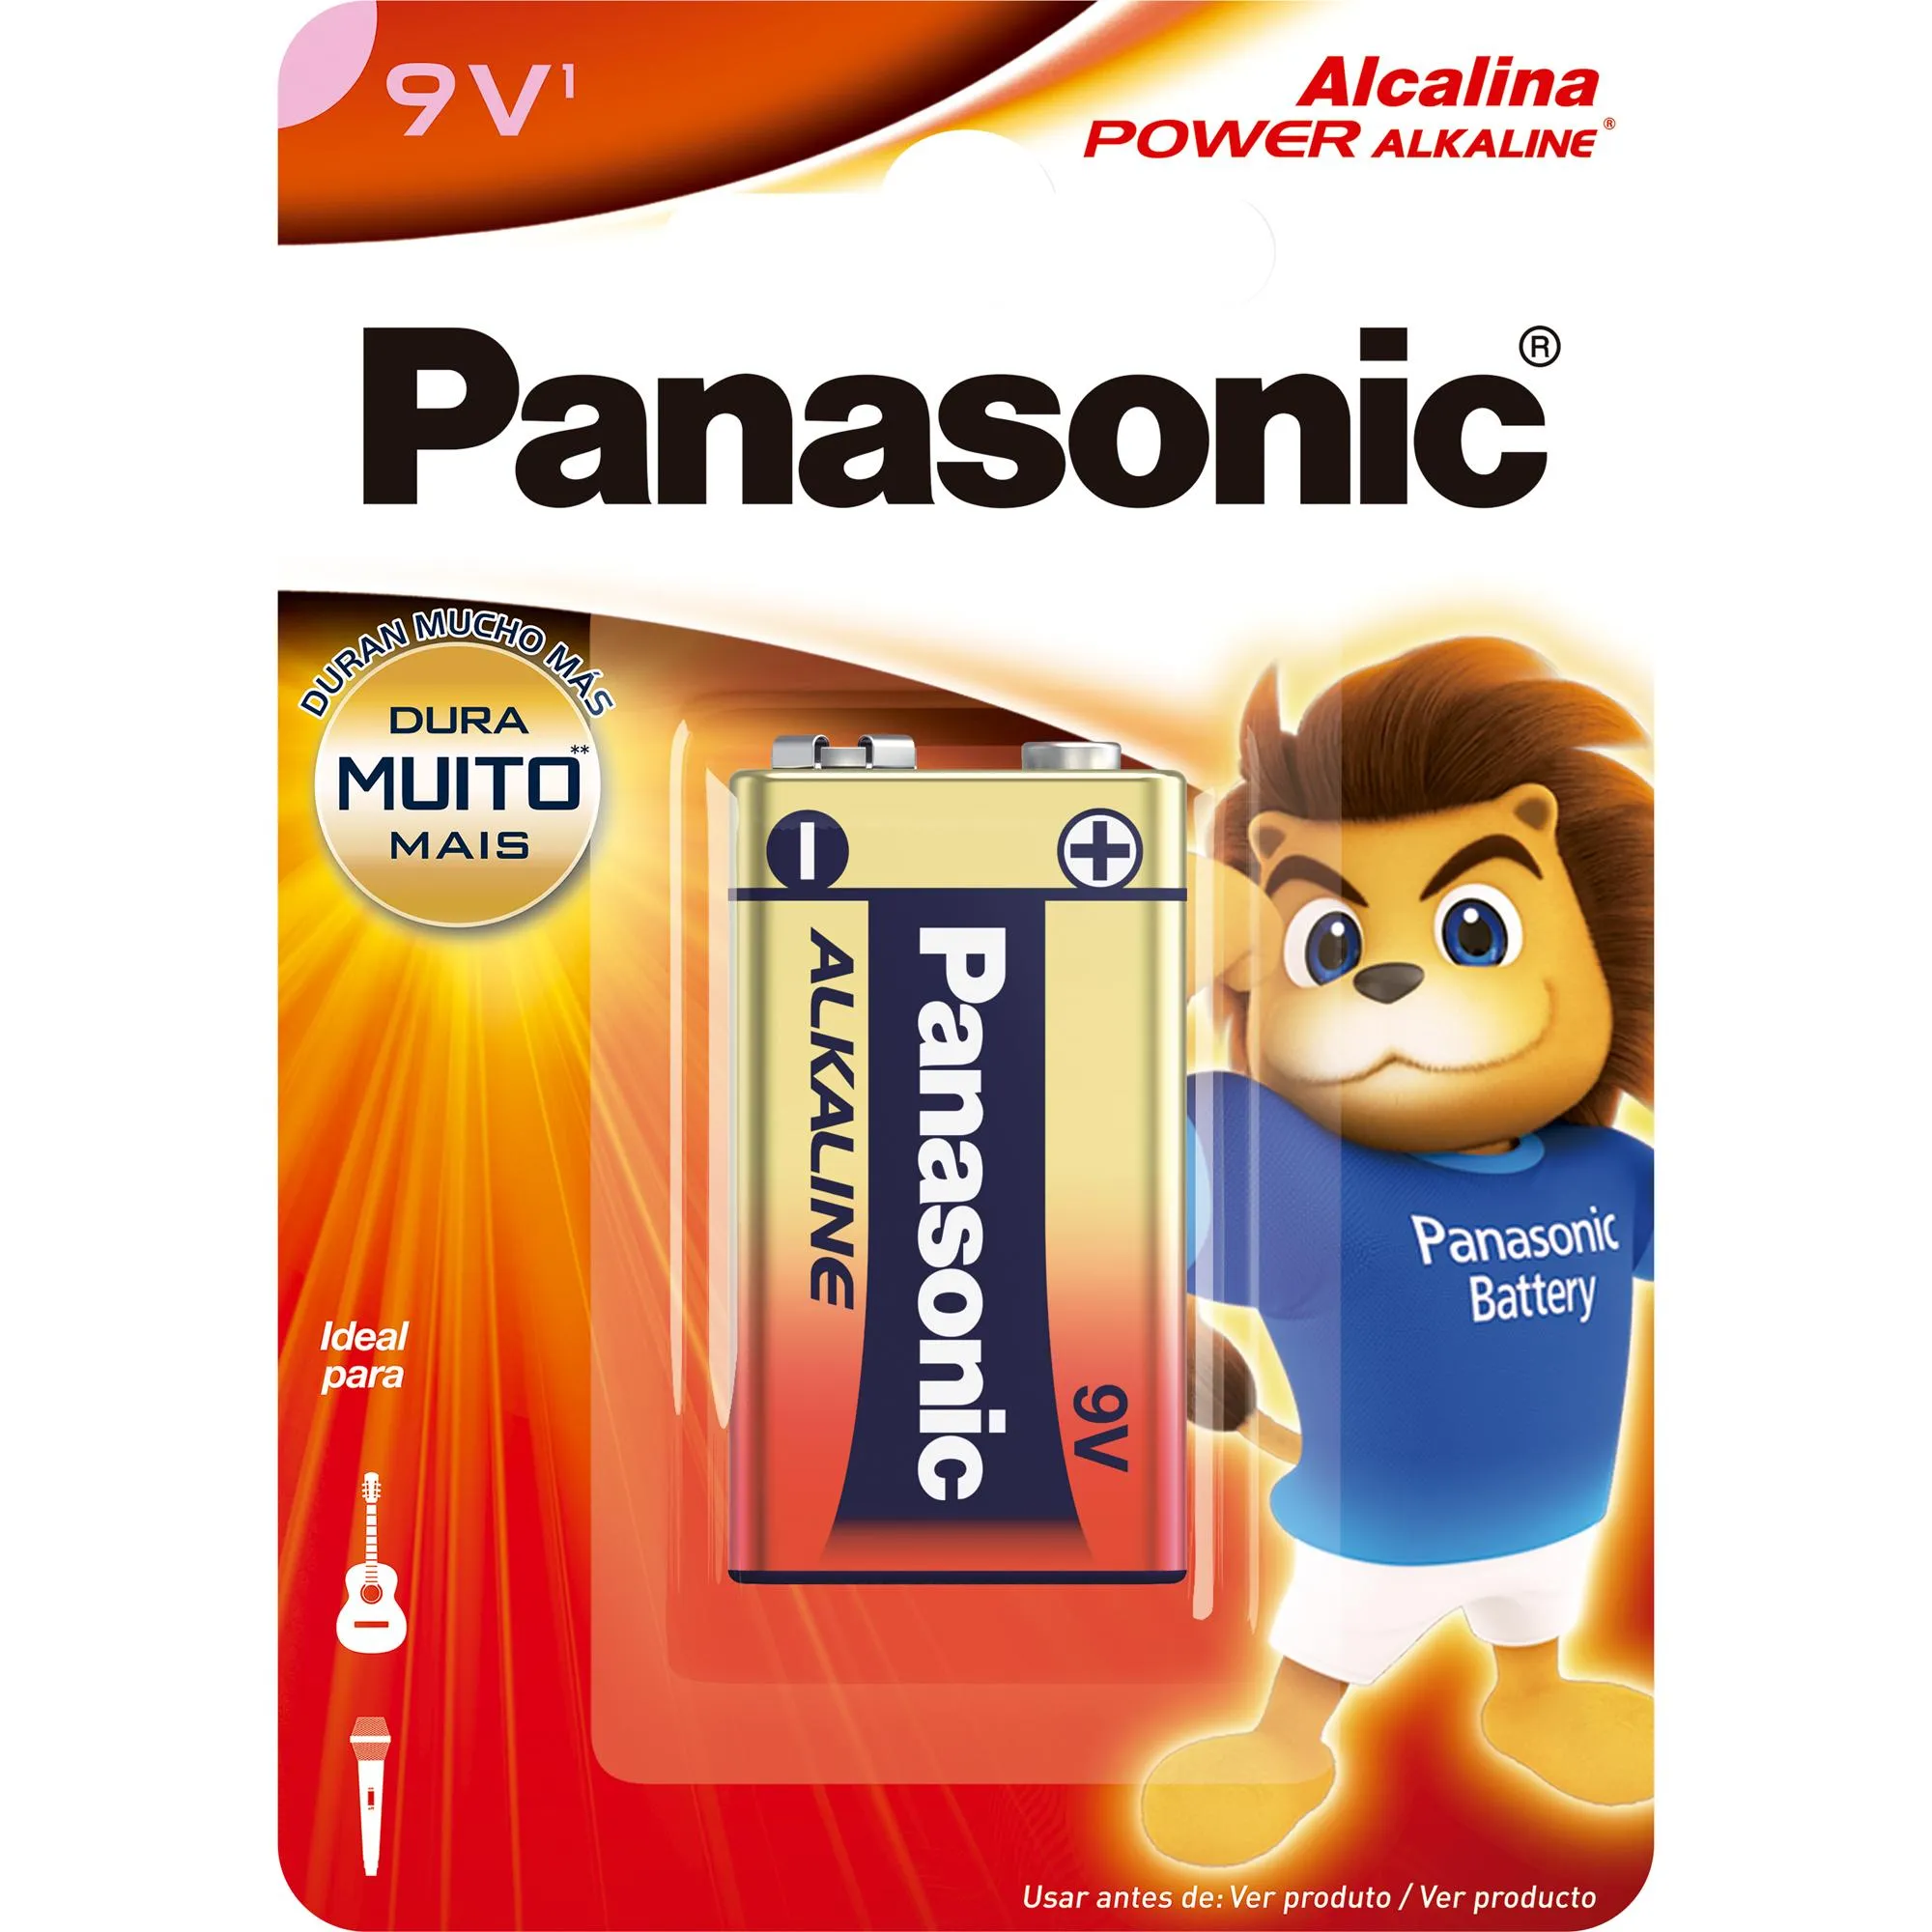 Bateria Alcalina 9V (C/1 Bateria) Panasonic por 14,99 à vista no boleto/pix ou parcele em até 1x sem juros. Compre na loja Mundomax!